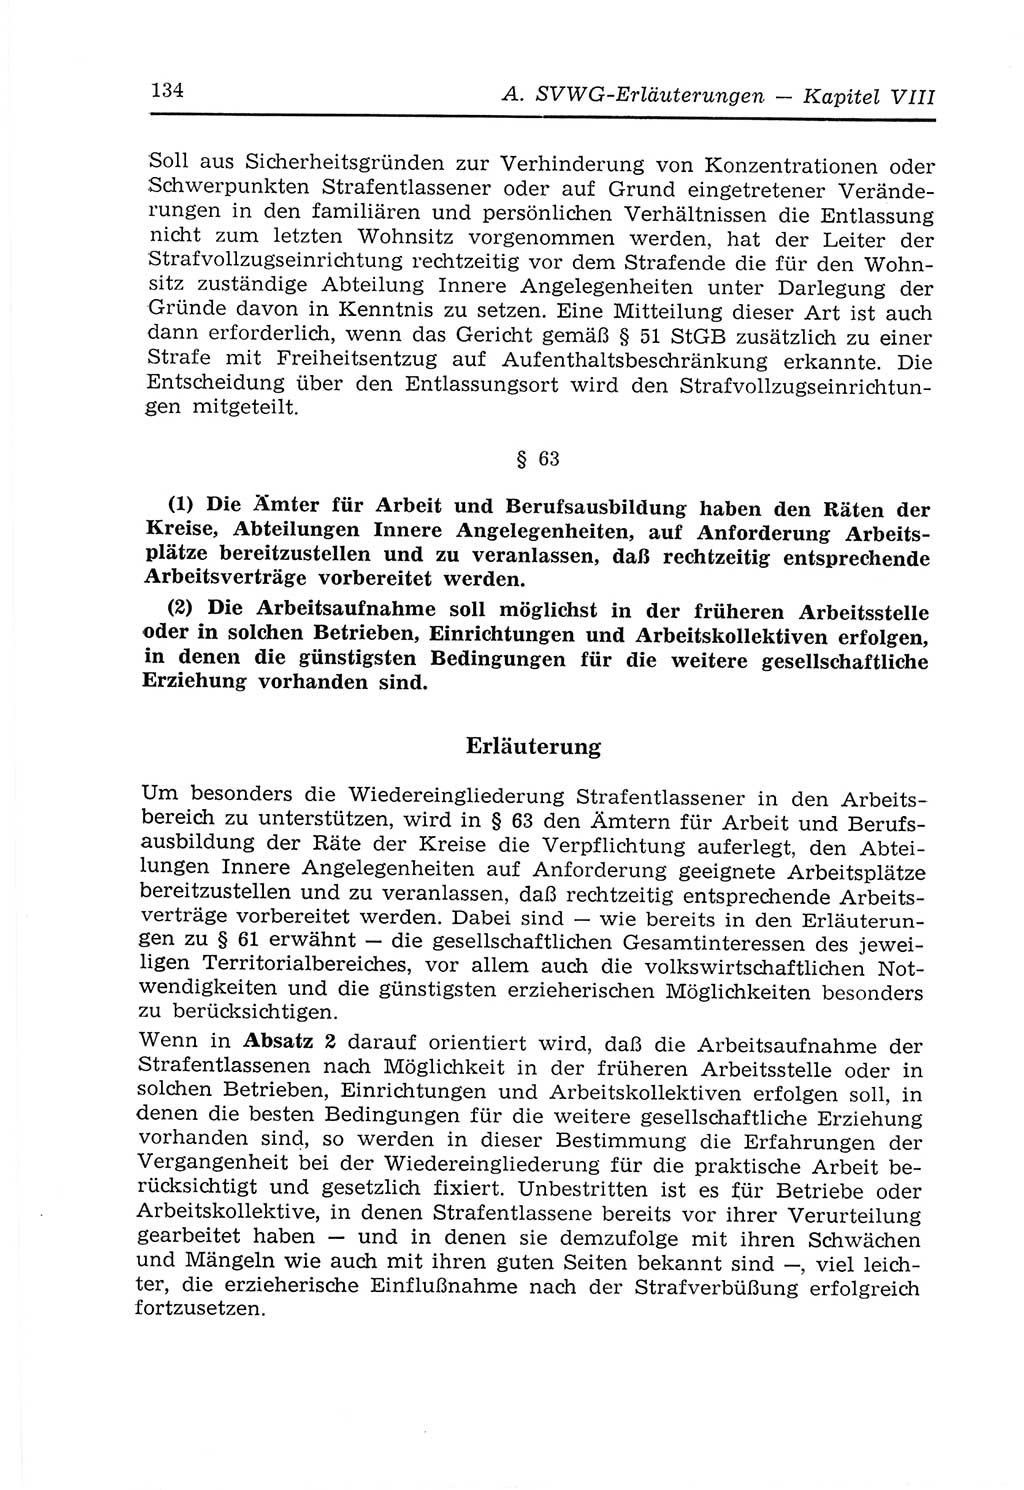 Strafvollzugs- und Wiedereingliederungsgesetz (SVWG) der Deutschen Demokratischen Republik (DDR) 1968, Seite 134 (SVWG DDR 1968, S. 134)